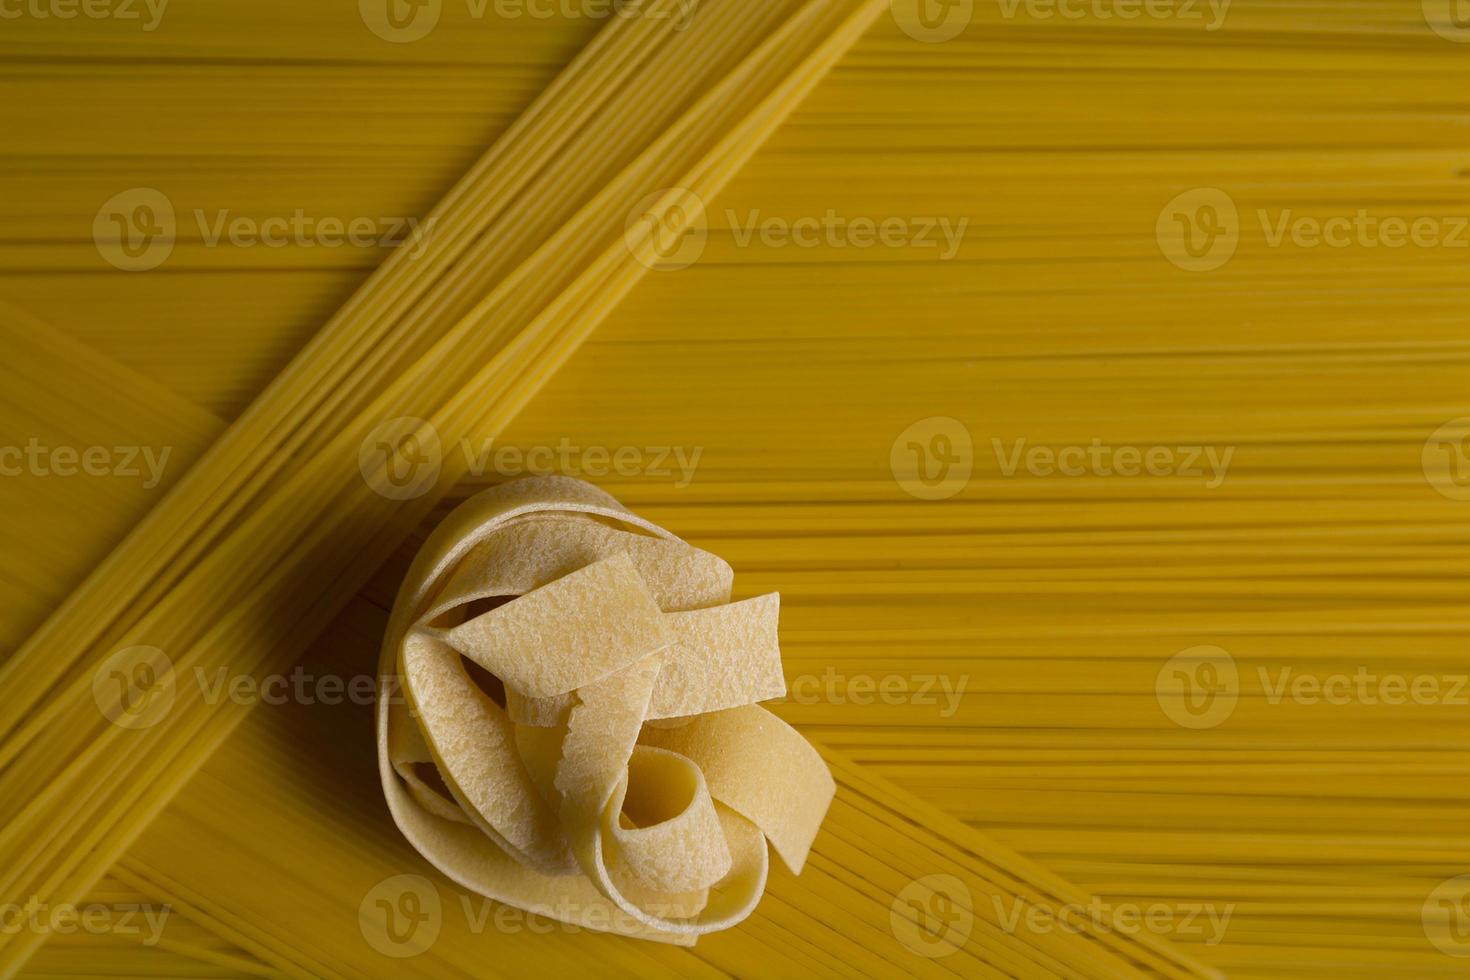 hausgemachte Pasta italienische Küche. gelbes langes spaghetti-lebensmittelhintergrundkonzept foto